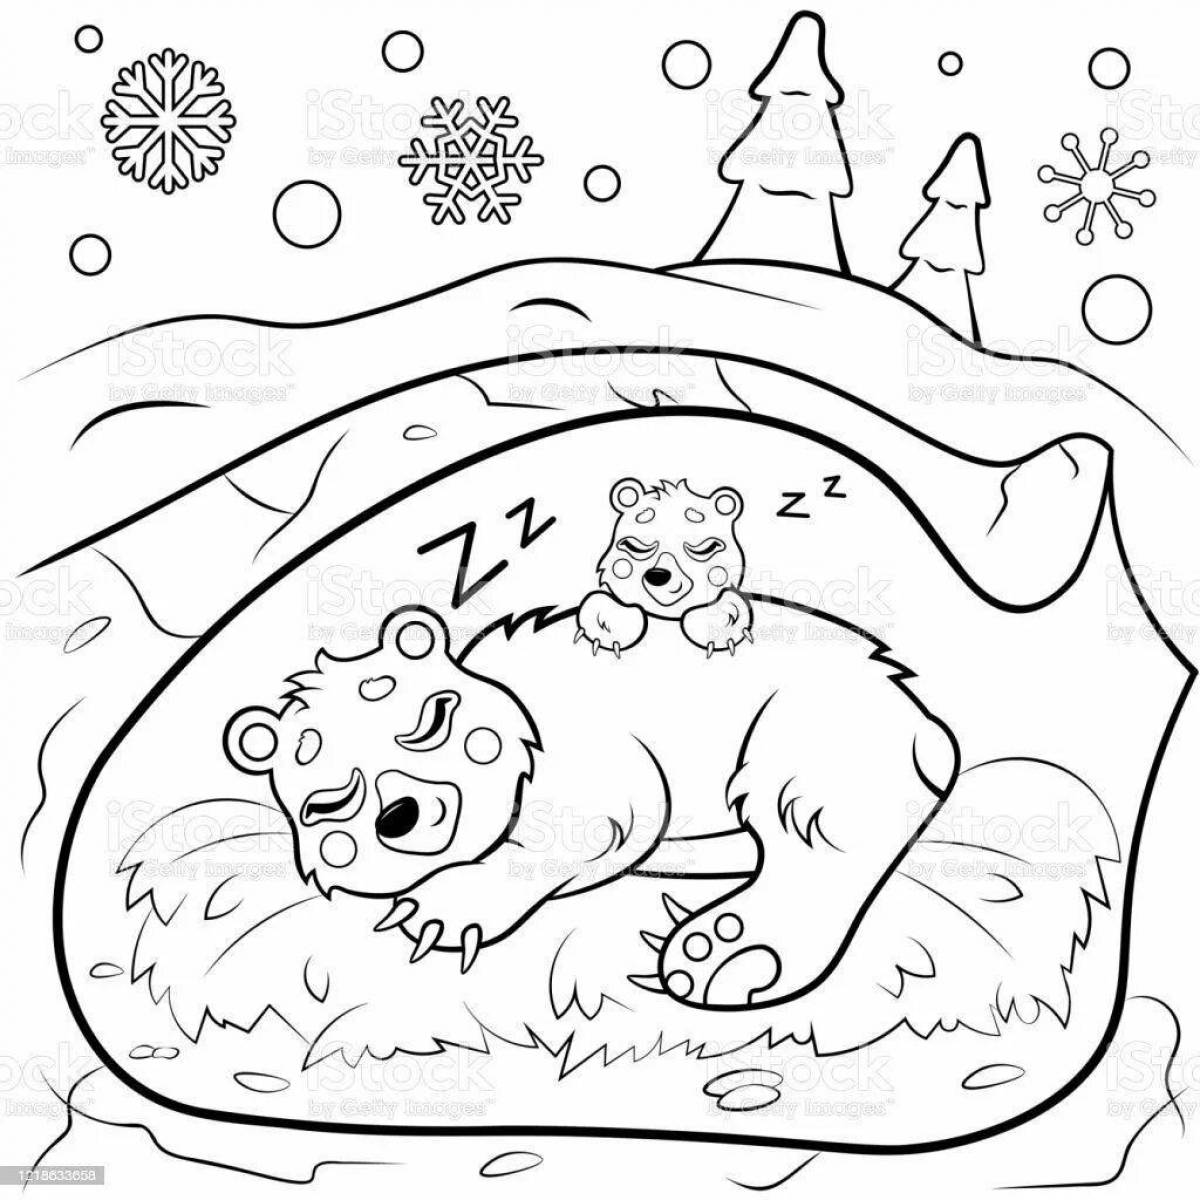 Раскраска причудливый медвежонок с медвежатами